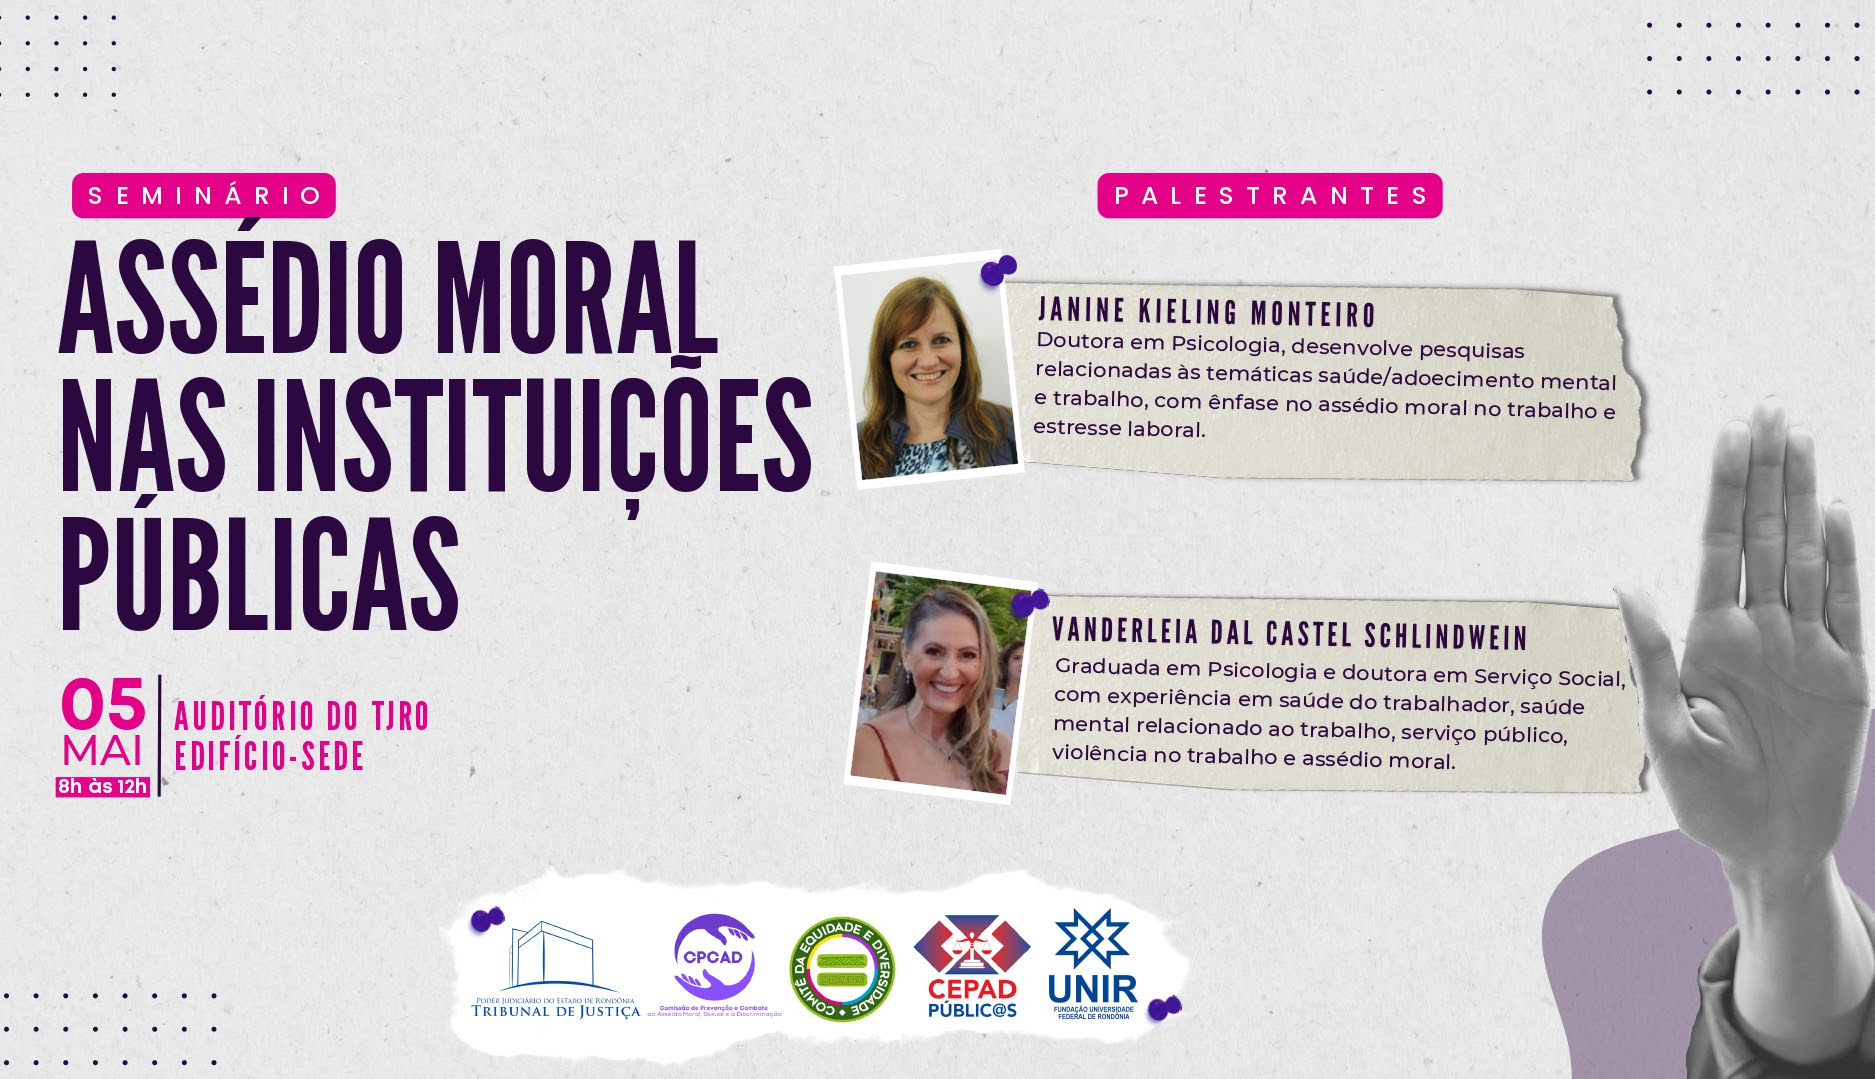 Banner do Seminário assédio moral nas instituições públicas com informações das palestrantes e a data do evento